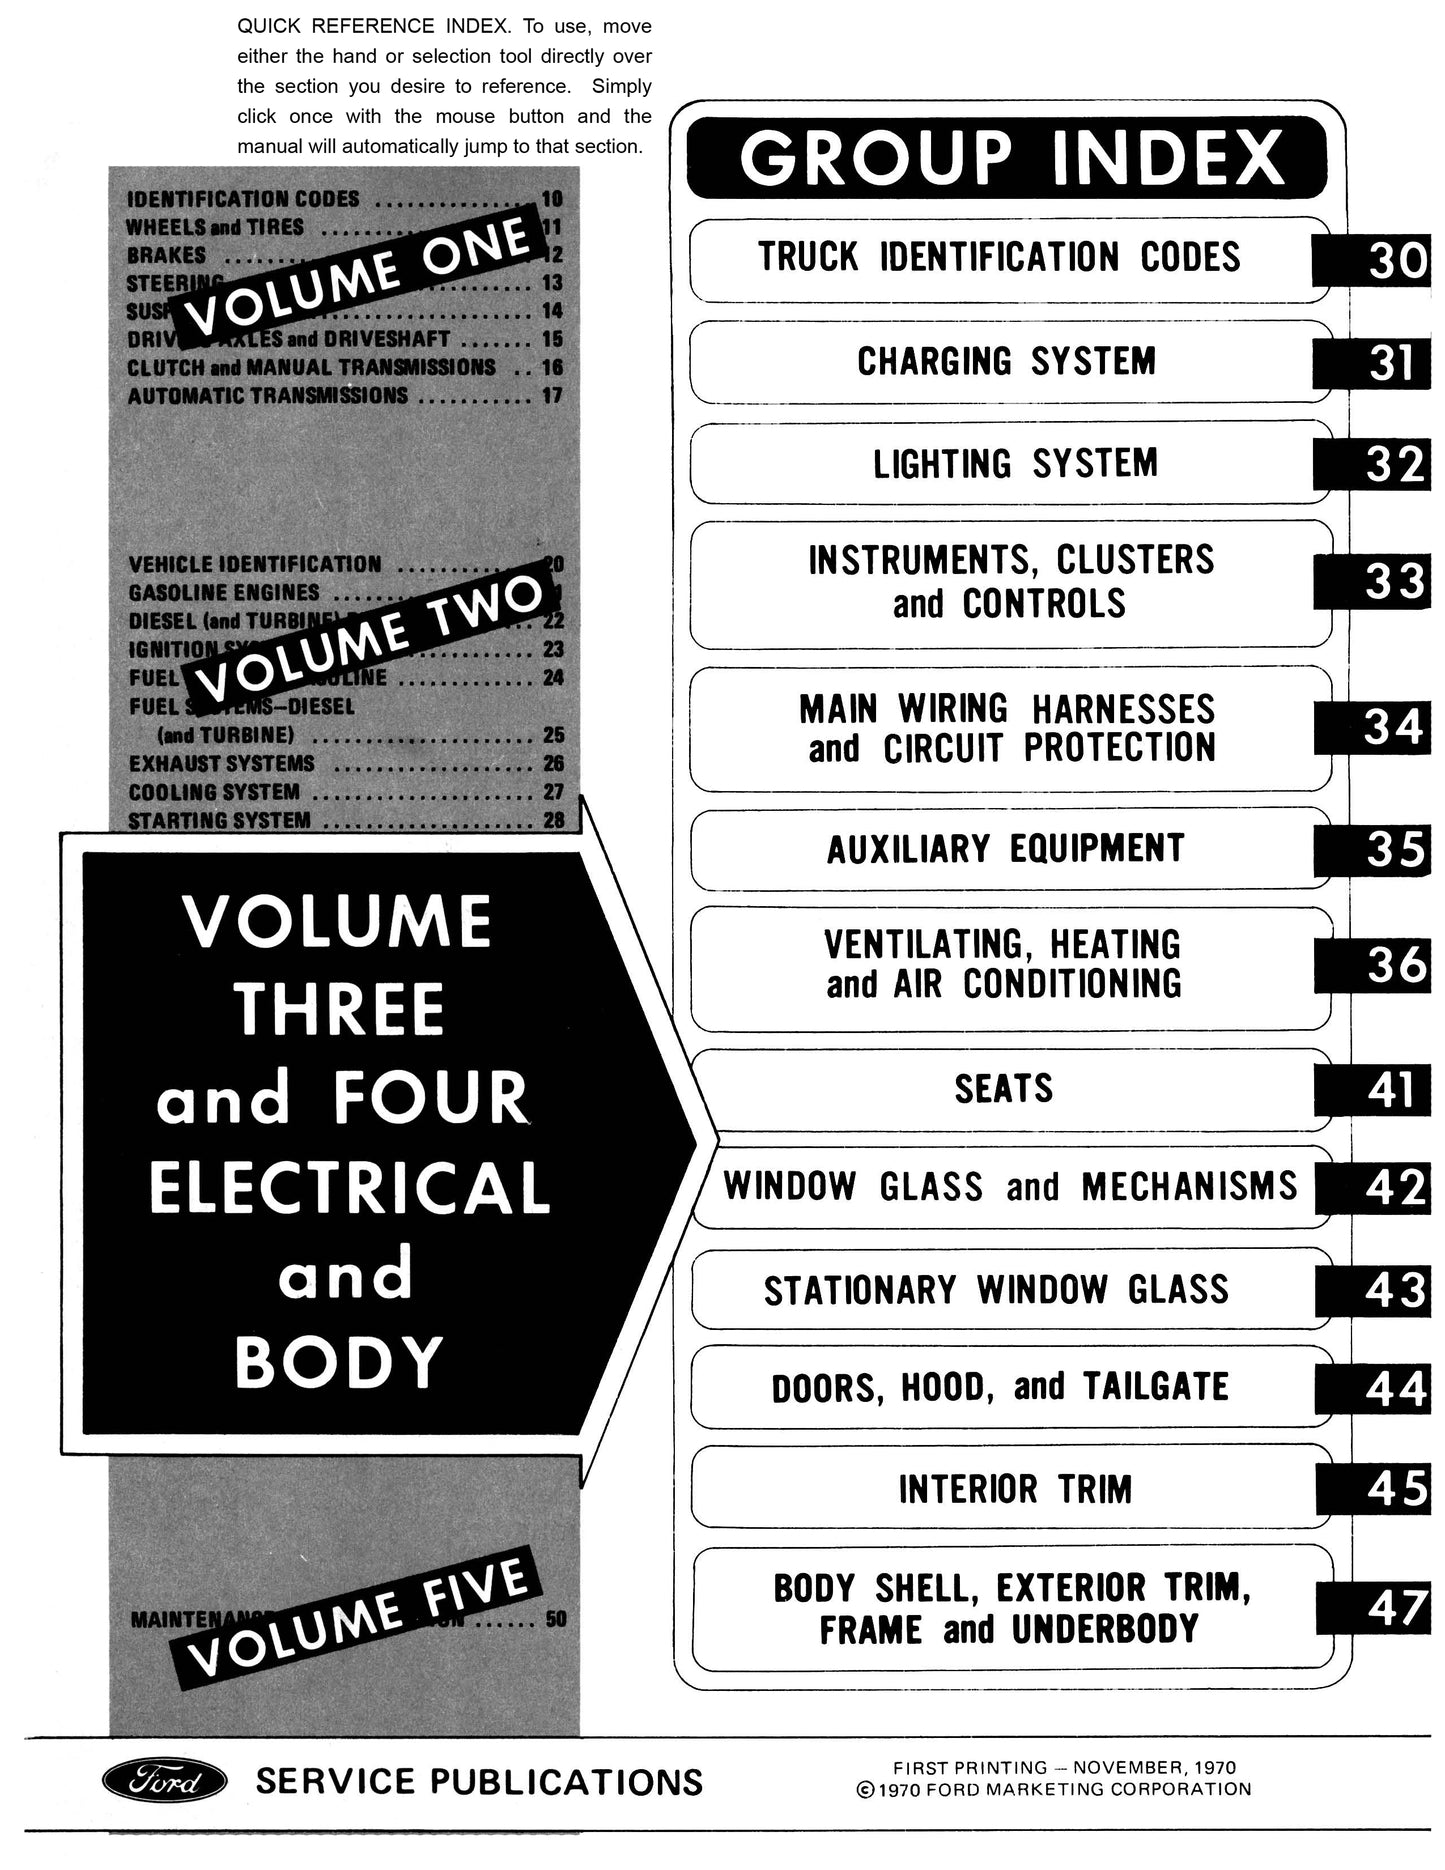 1971 Ford Truck Repair Manual 5 Volume Set